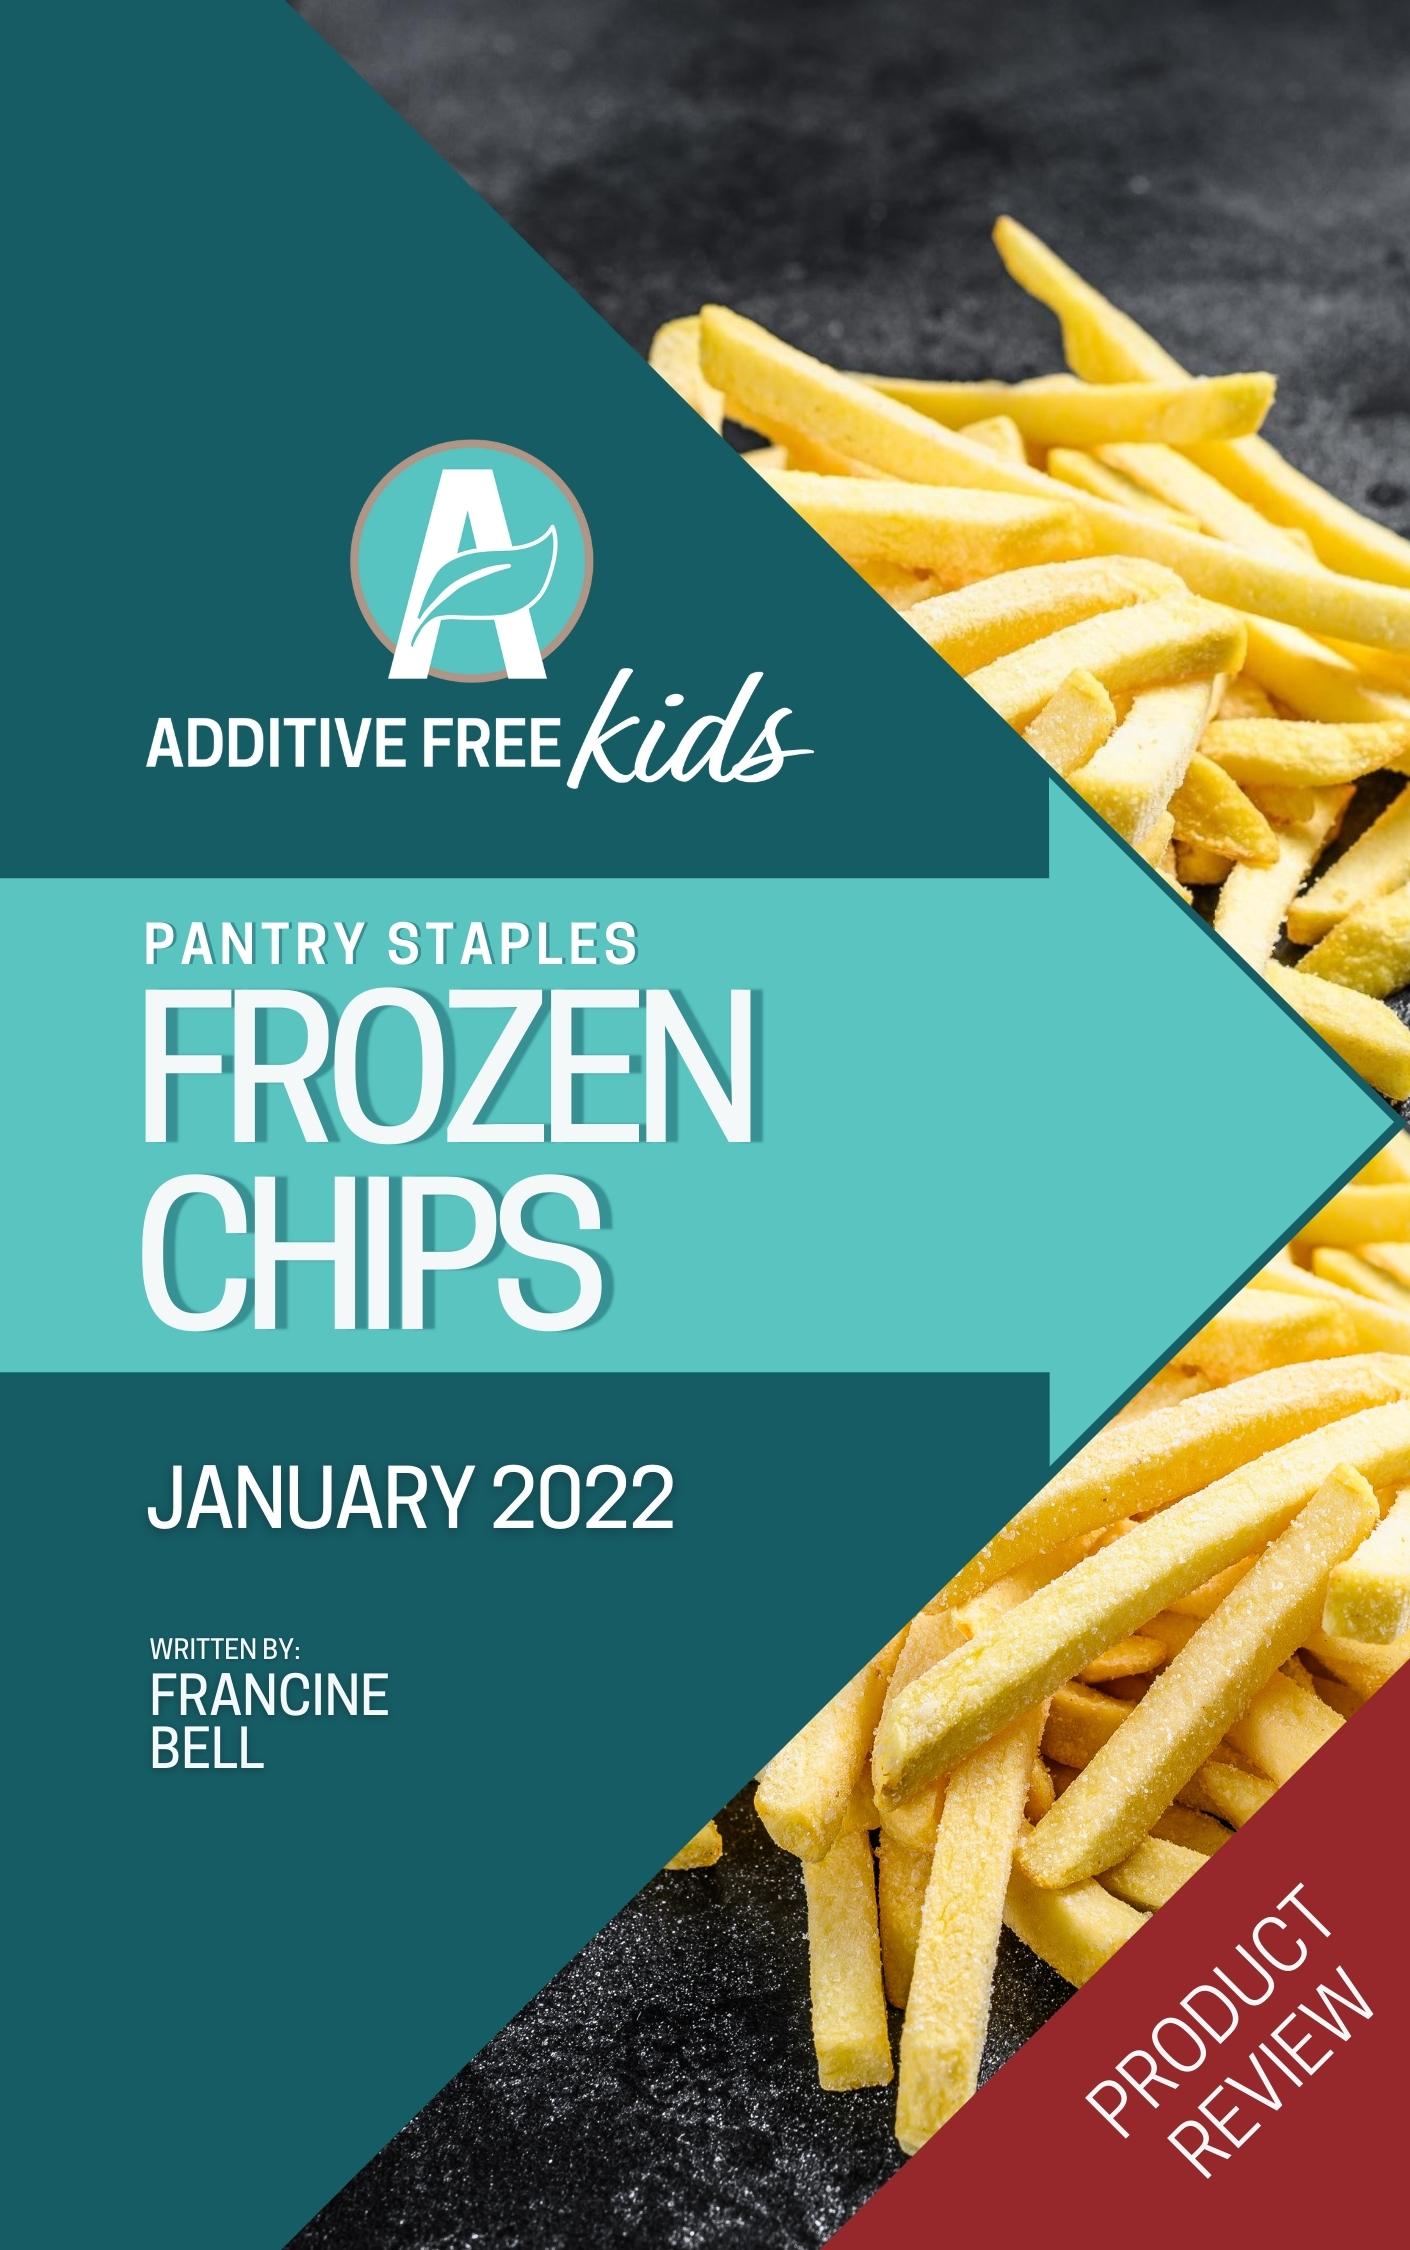 Best frozen chips to buy